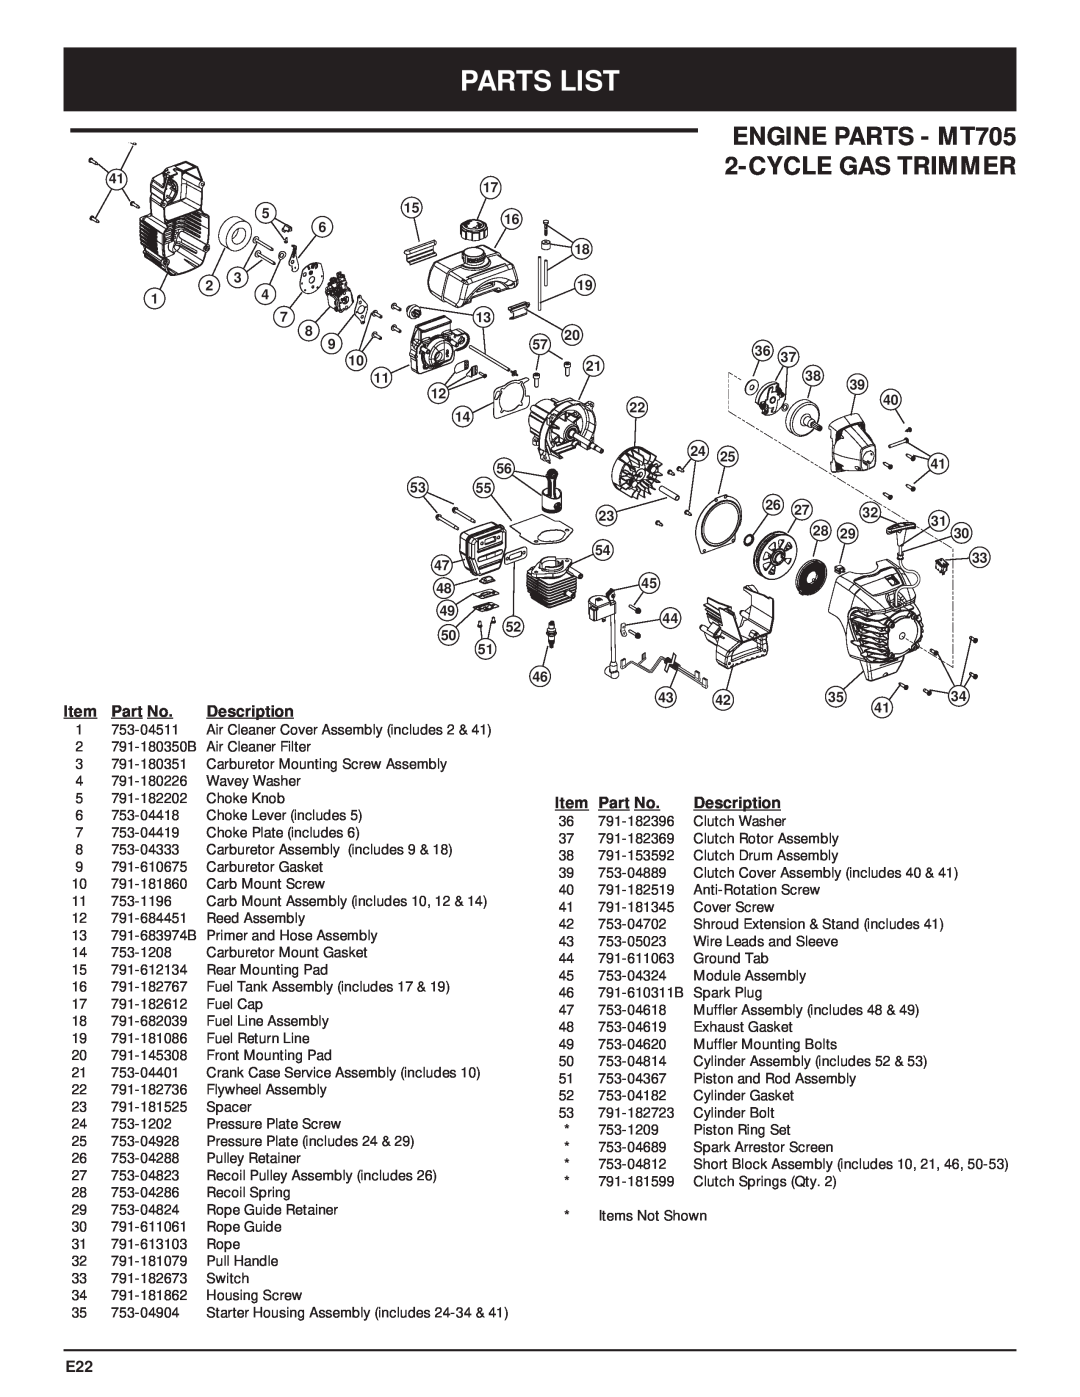 McCulloch manual Parts List, ENGINE PARTS - MT705 2-CYCLE GAS TRIMMER, Item Part No. Description 